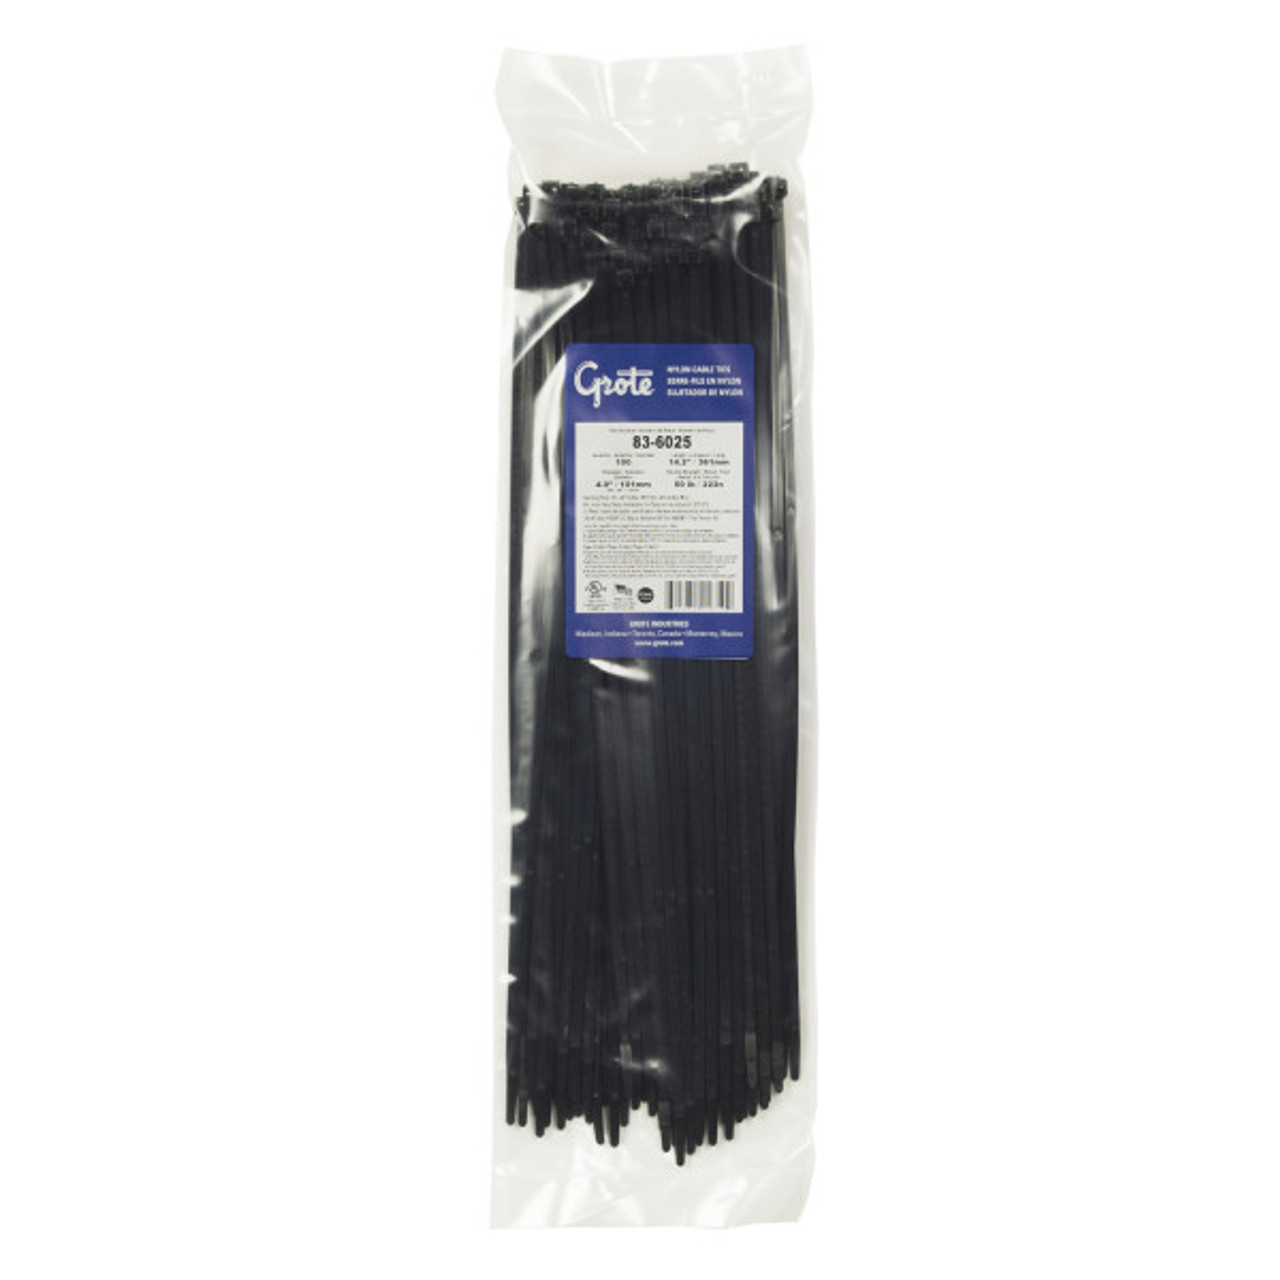 Wire Ties- 14" Length- Black- Pack of 100 (Grote 83-6025)